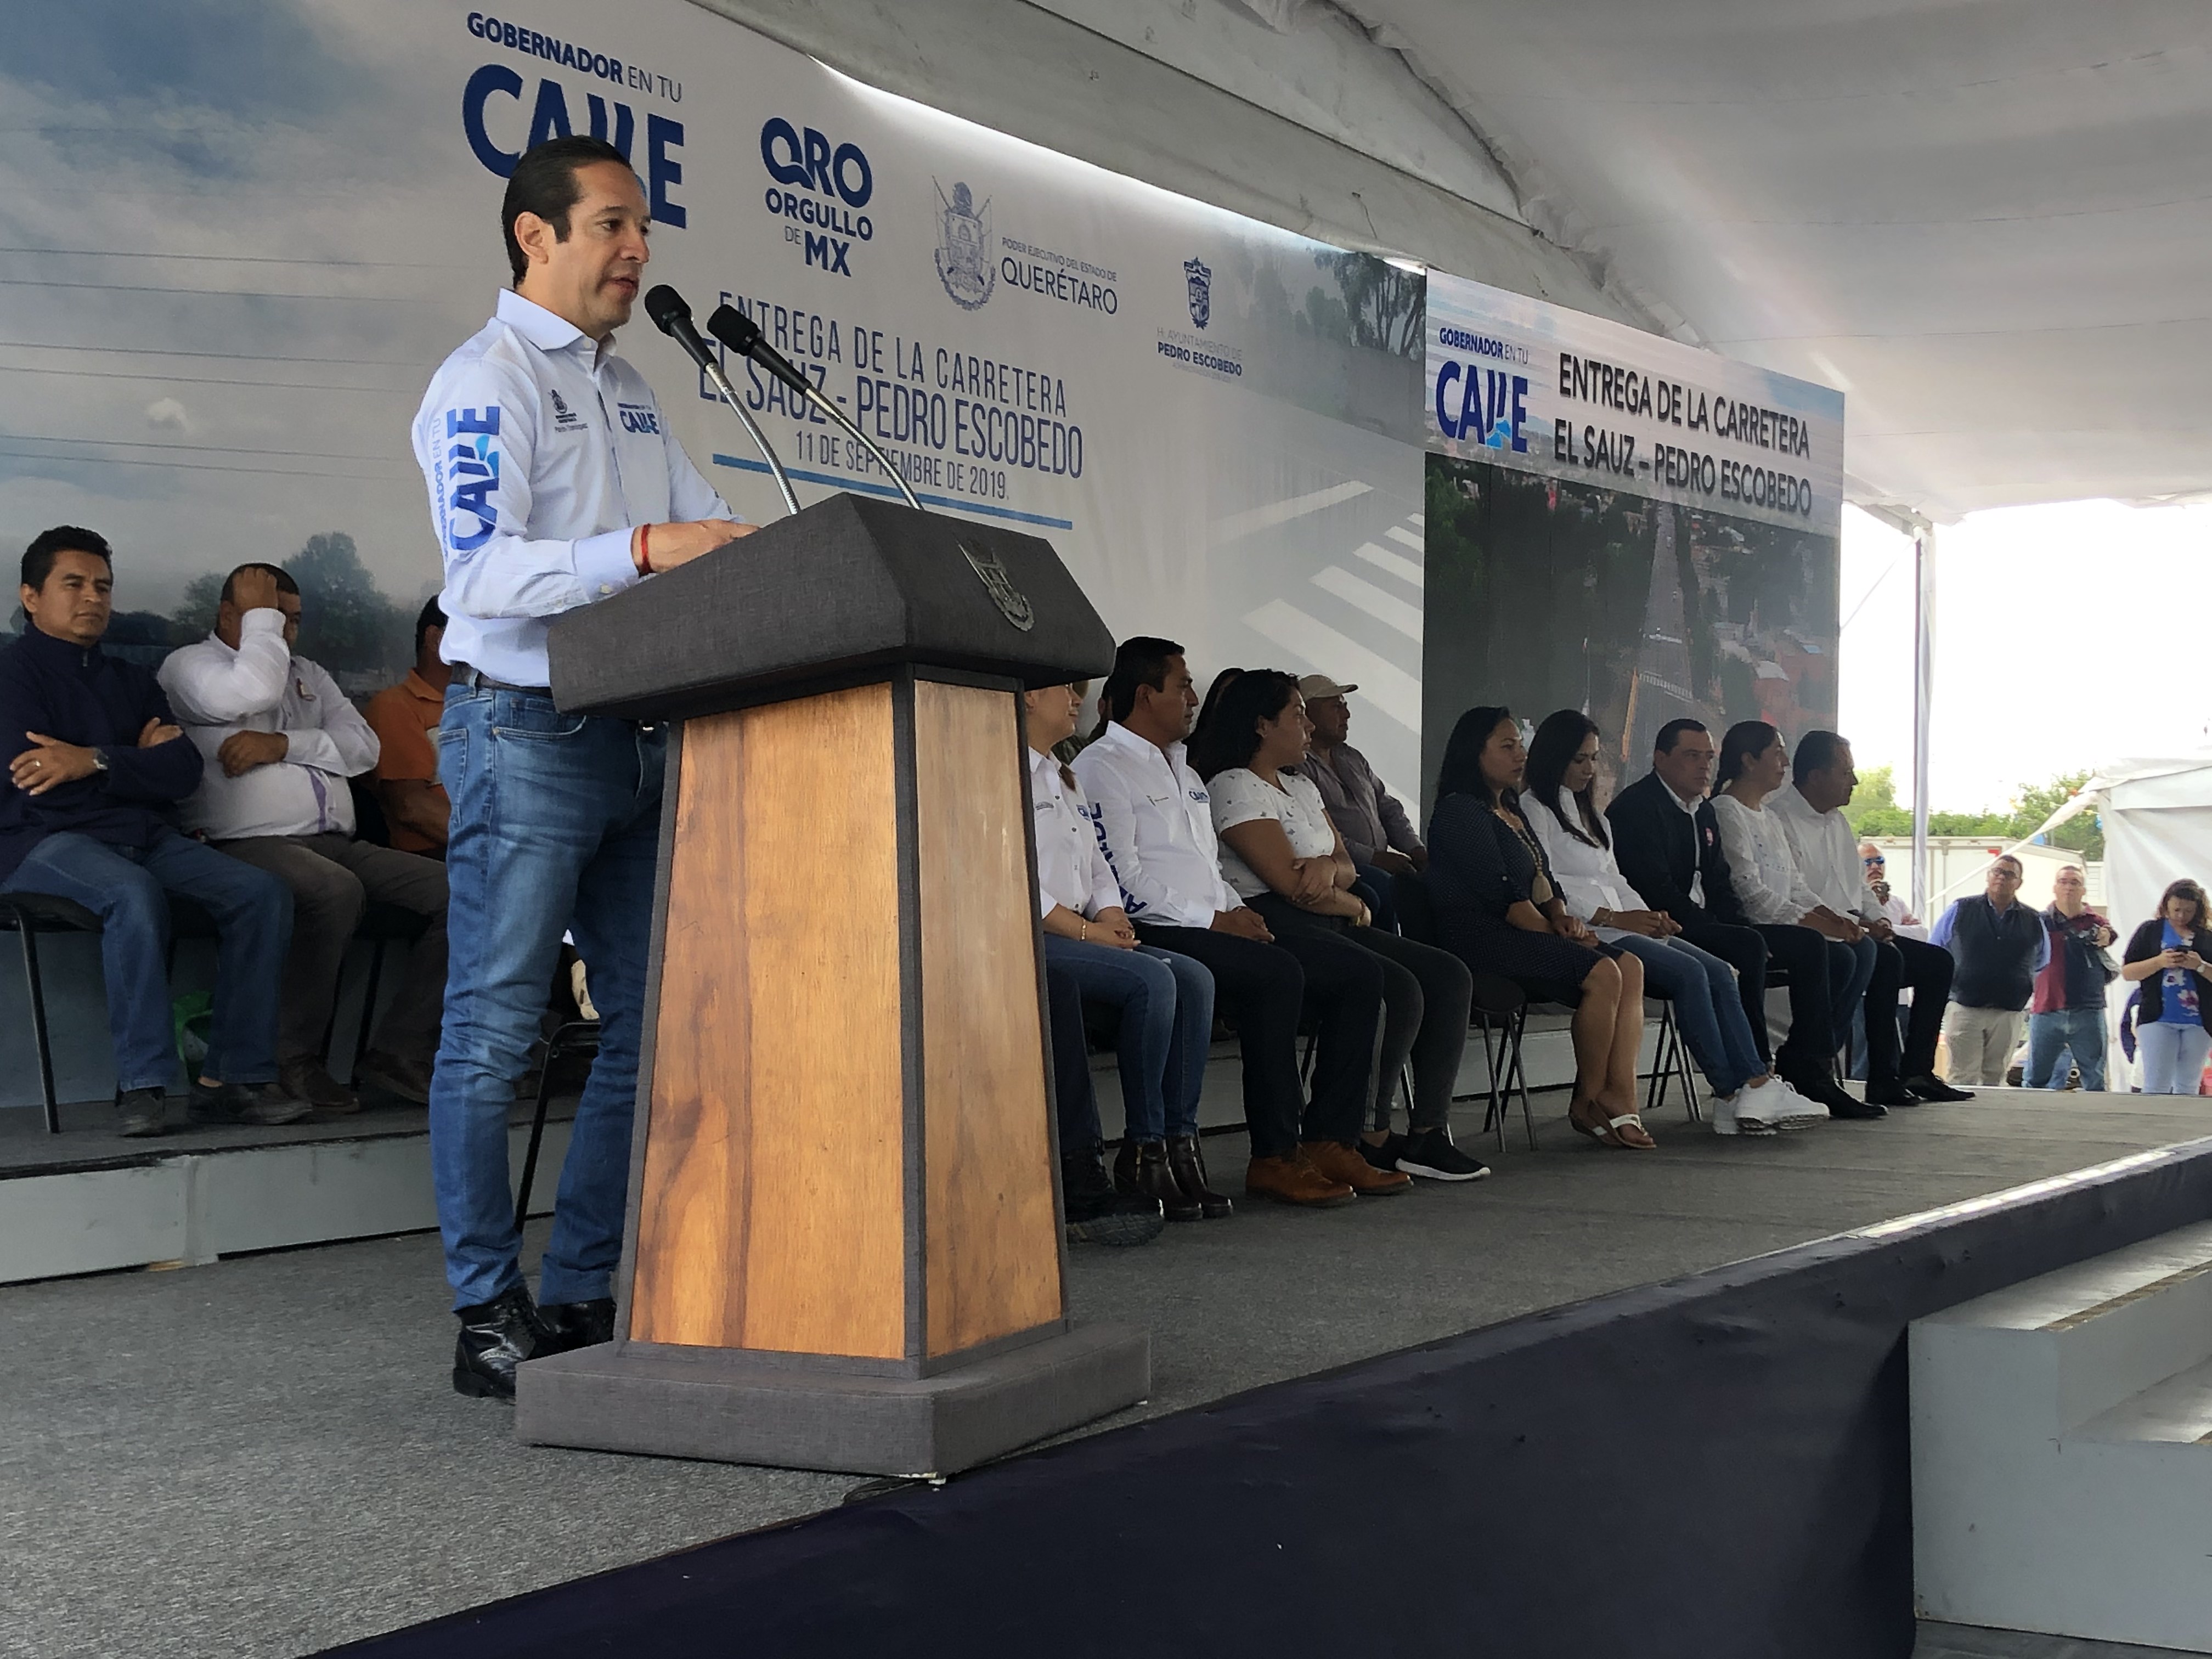  Estado invierte 60.9 mdp en rehabilitación de la carretera El Sauz-Pedro Escobedo